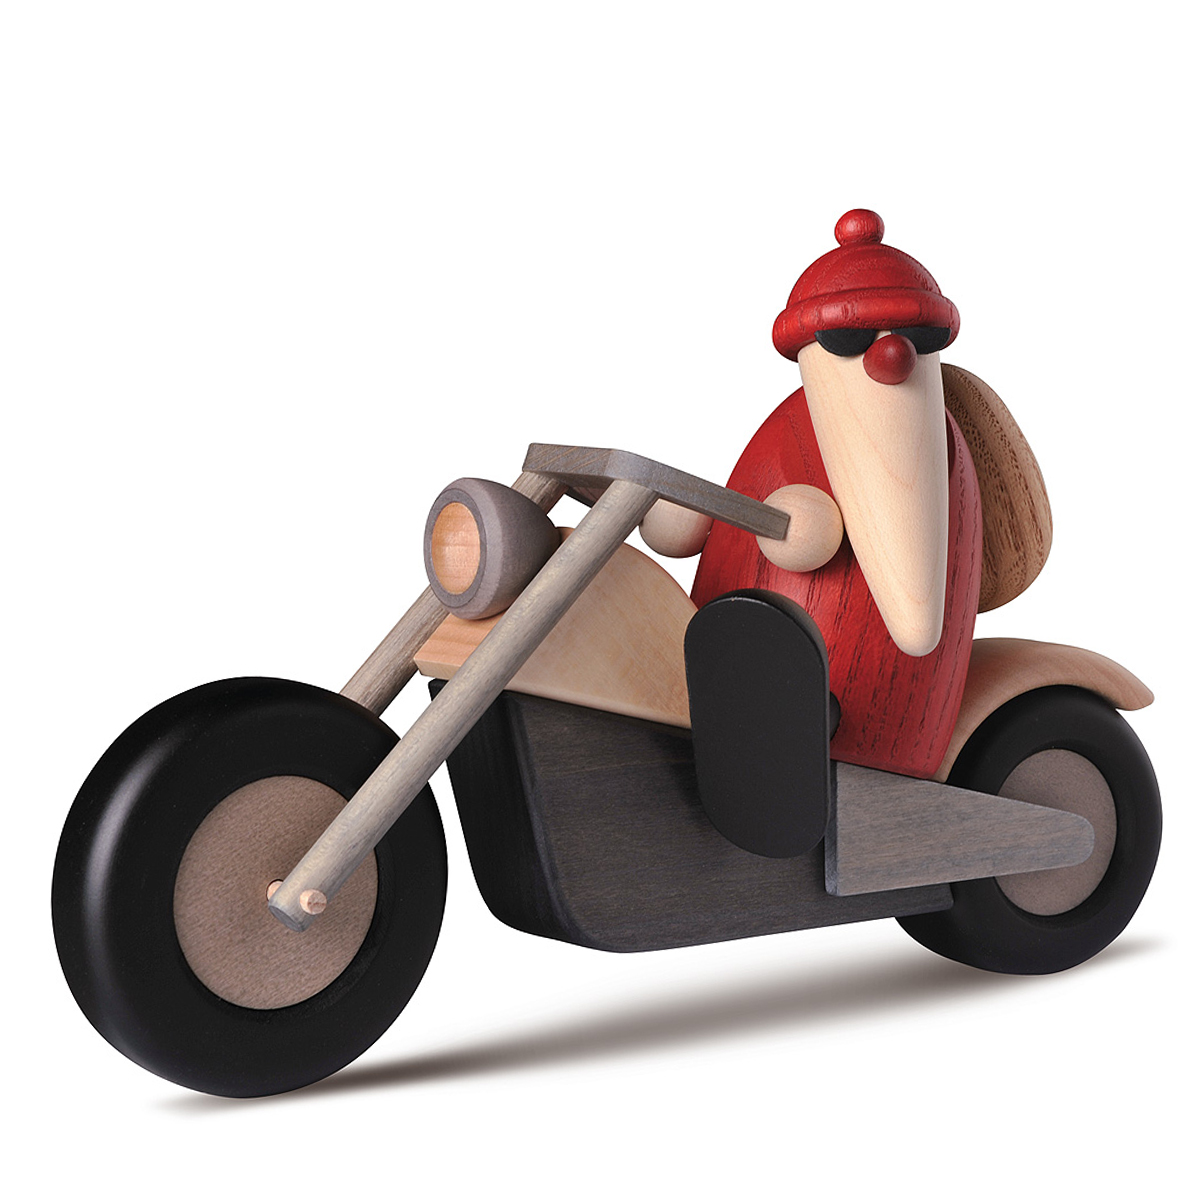 Santa Claus riding a bike, small